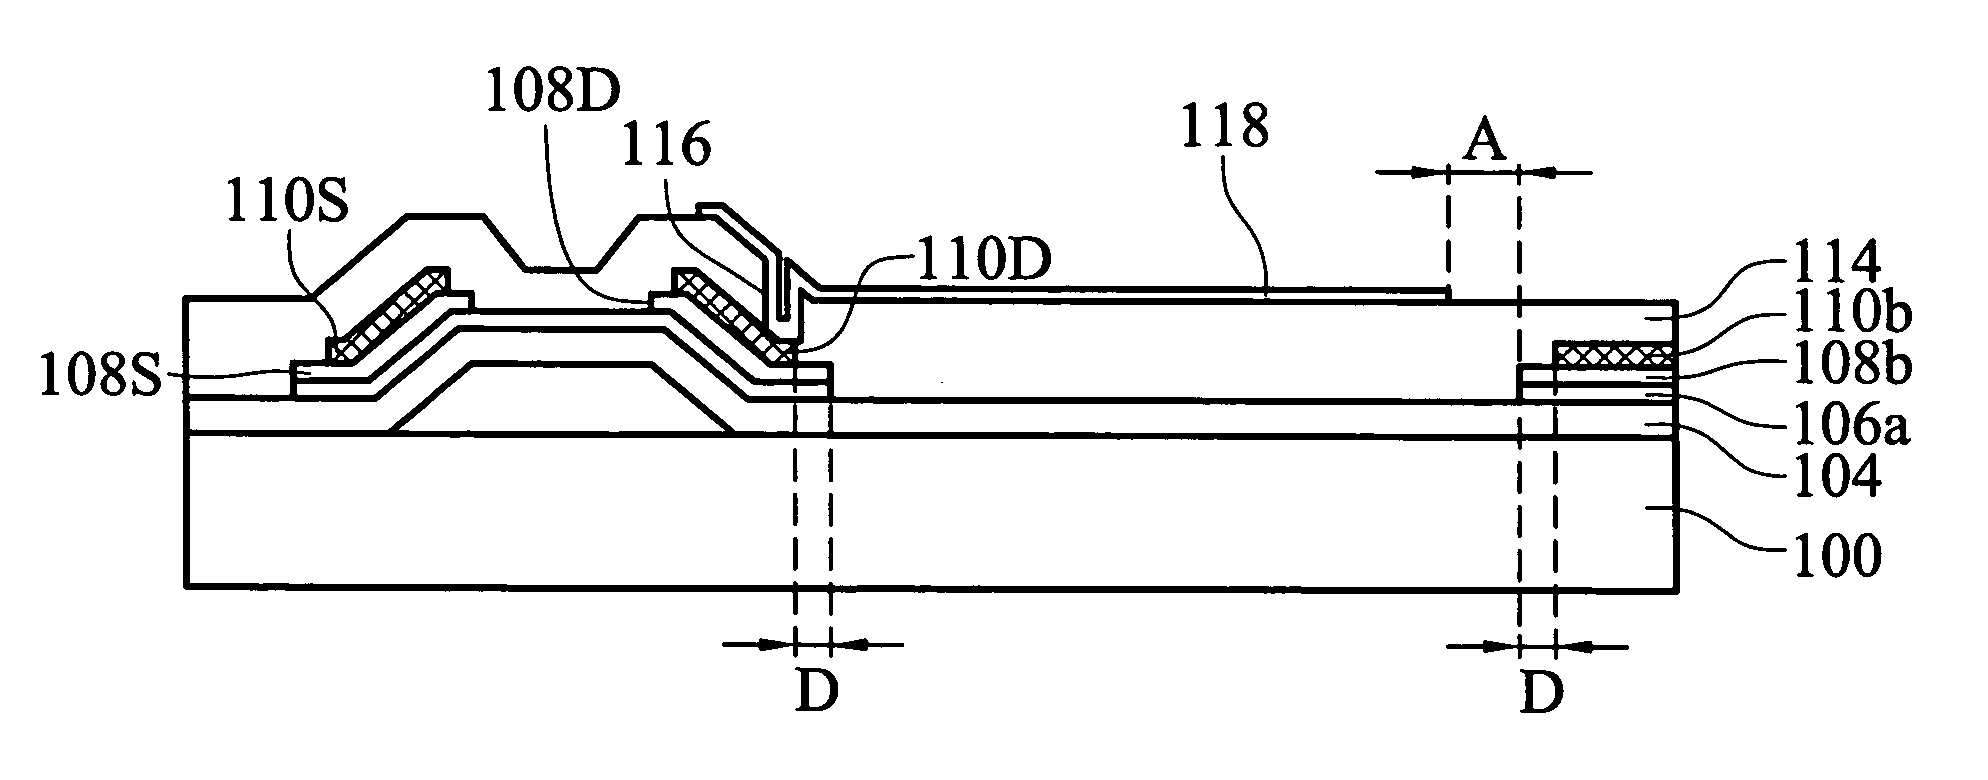 Flat panel display and fabrication method thereof